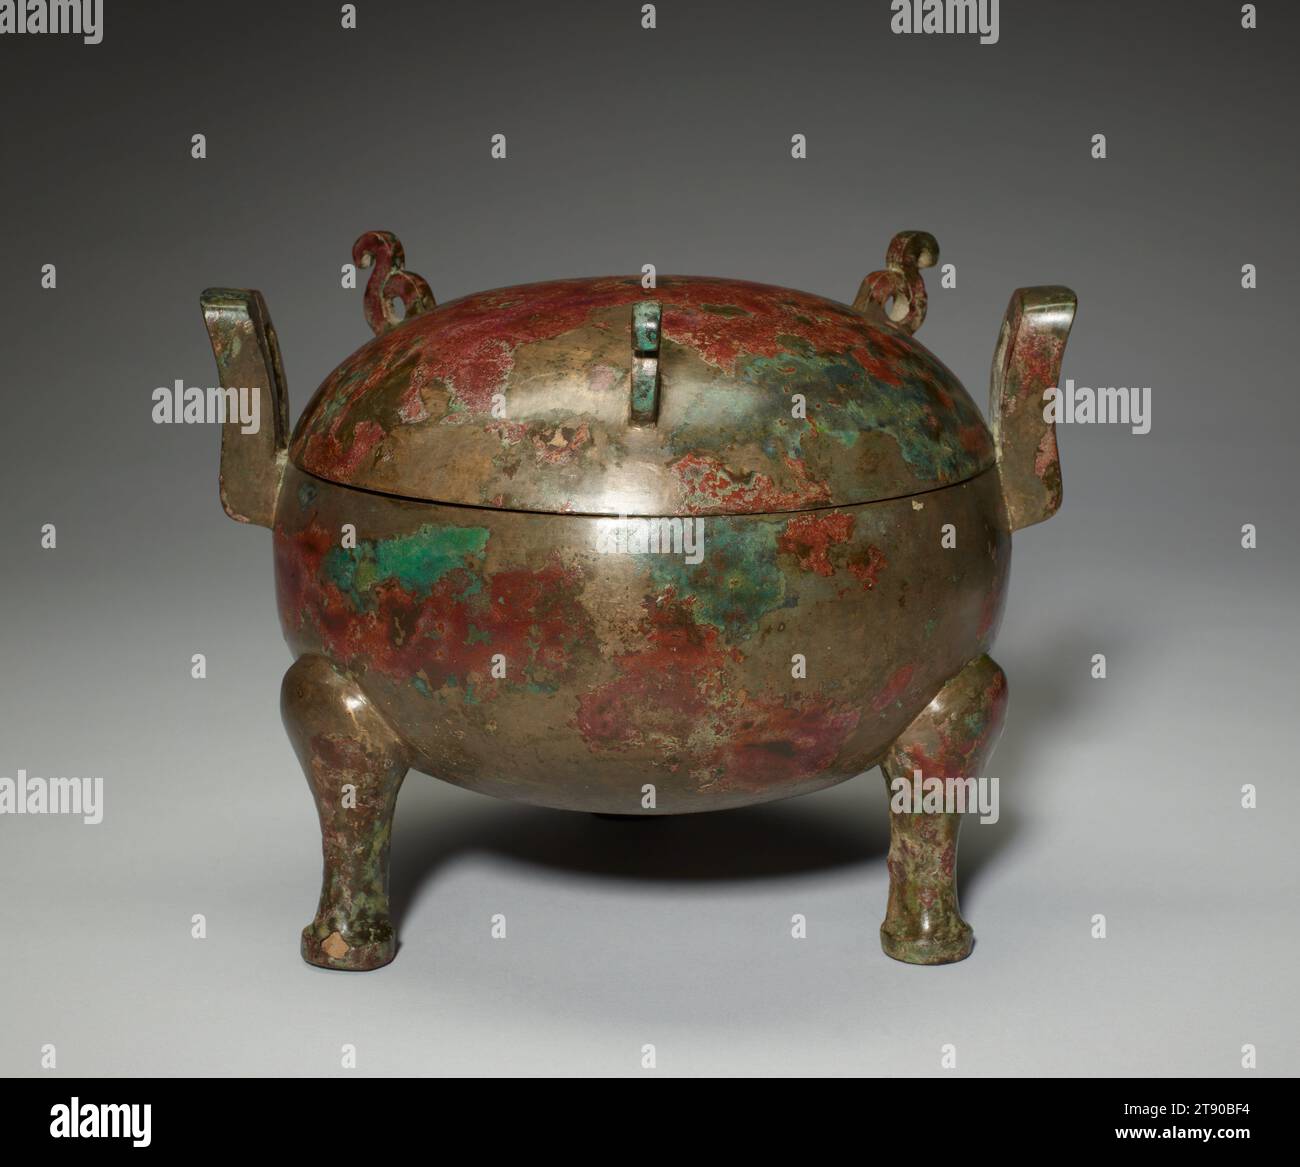 Ding-Lebensmittelgefäß, 3. Jahrhundert v. Chr., 6 3/4 x 8 3/4 x 7 7/16 Zoll, 3,7 lb. (17,1 x 22,2 x 18,9 cm, 1,7 kg), Bronze, China, 3. Jahrhundert v. Chr., der Speisekessel, bekannt als Ding, war die bekannteste Art von Ritualgefäßen während der chinesischen Bronzezeit. Es wurde verwendet, um Fleisch während Zeremonien zu kochen, zu halten und zu würzen, die den Spirituosen der Vorfahren gewidmet waren. Die vertikalen Griffe ermöglichten es, das Schiff abzusenken und aus einem offenen Feuer zu entfernen. Im Rahmen der Begräbnispraxis wurden solche Bronzestunde mit den Verstorbenen begraben. Die Anzahl der Gebäude, die eine Gruppe bilden, hing vom Status des Grabbewohners ab. Stockfoto